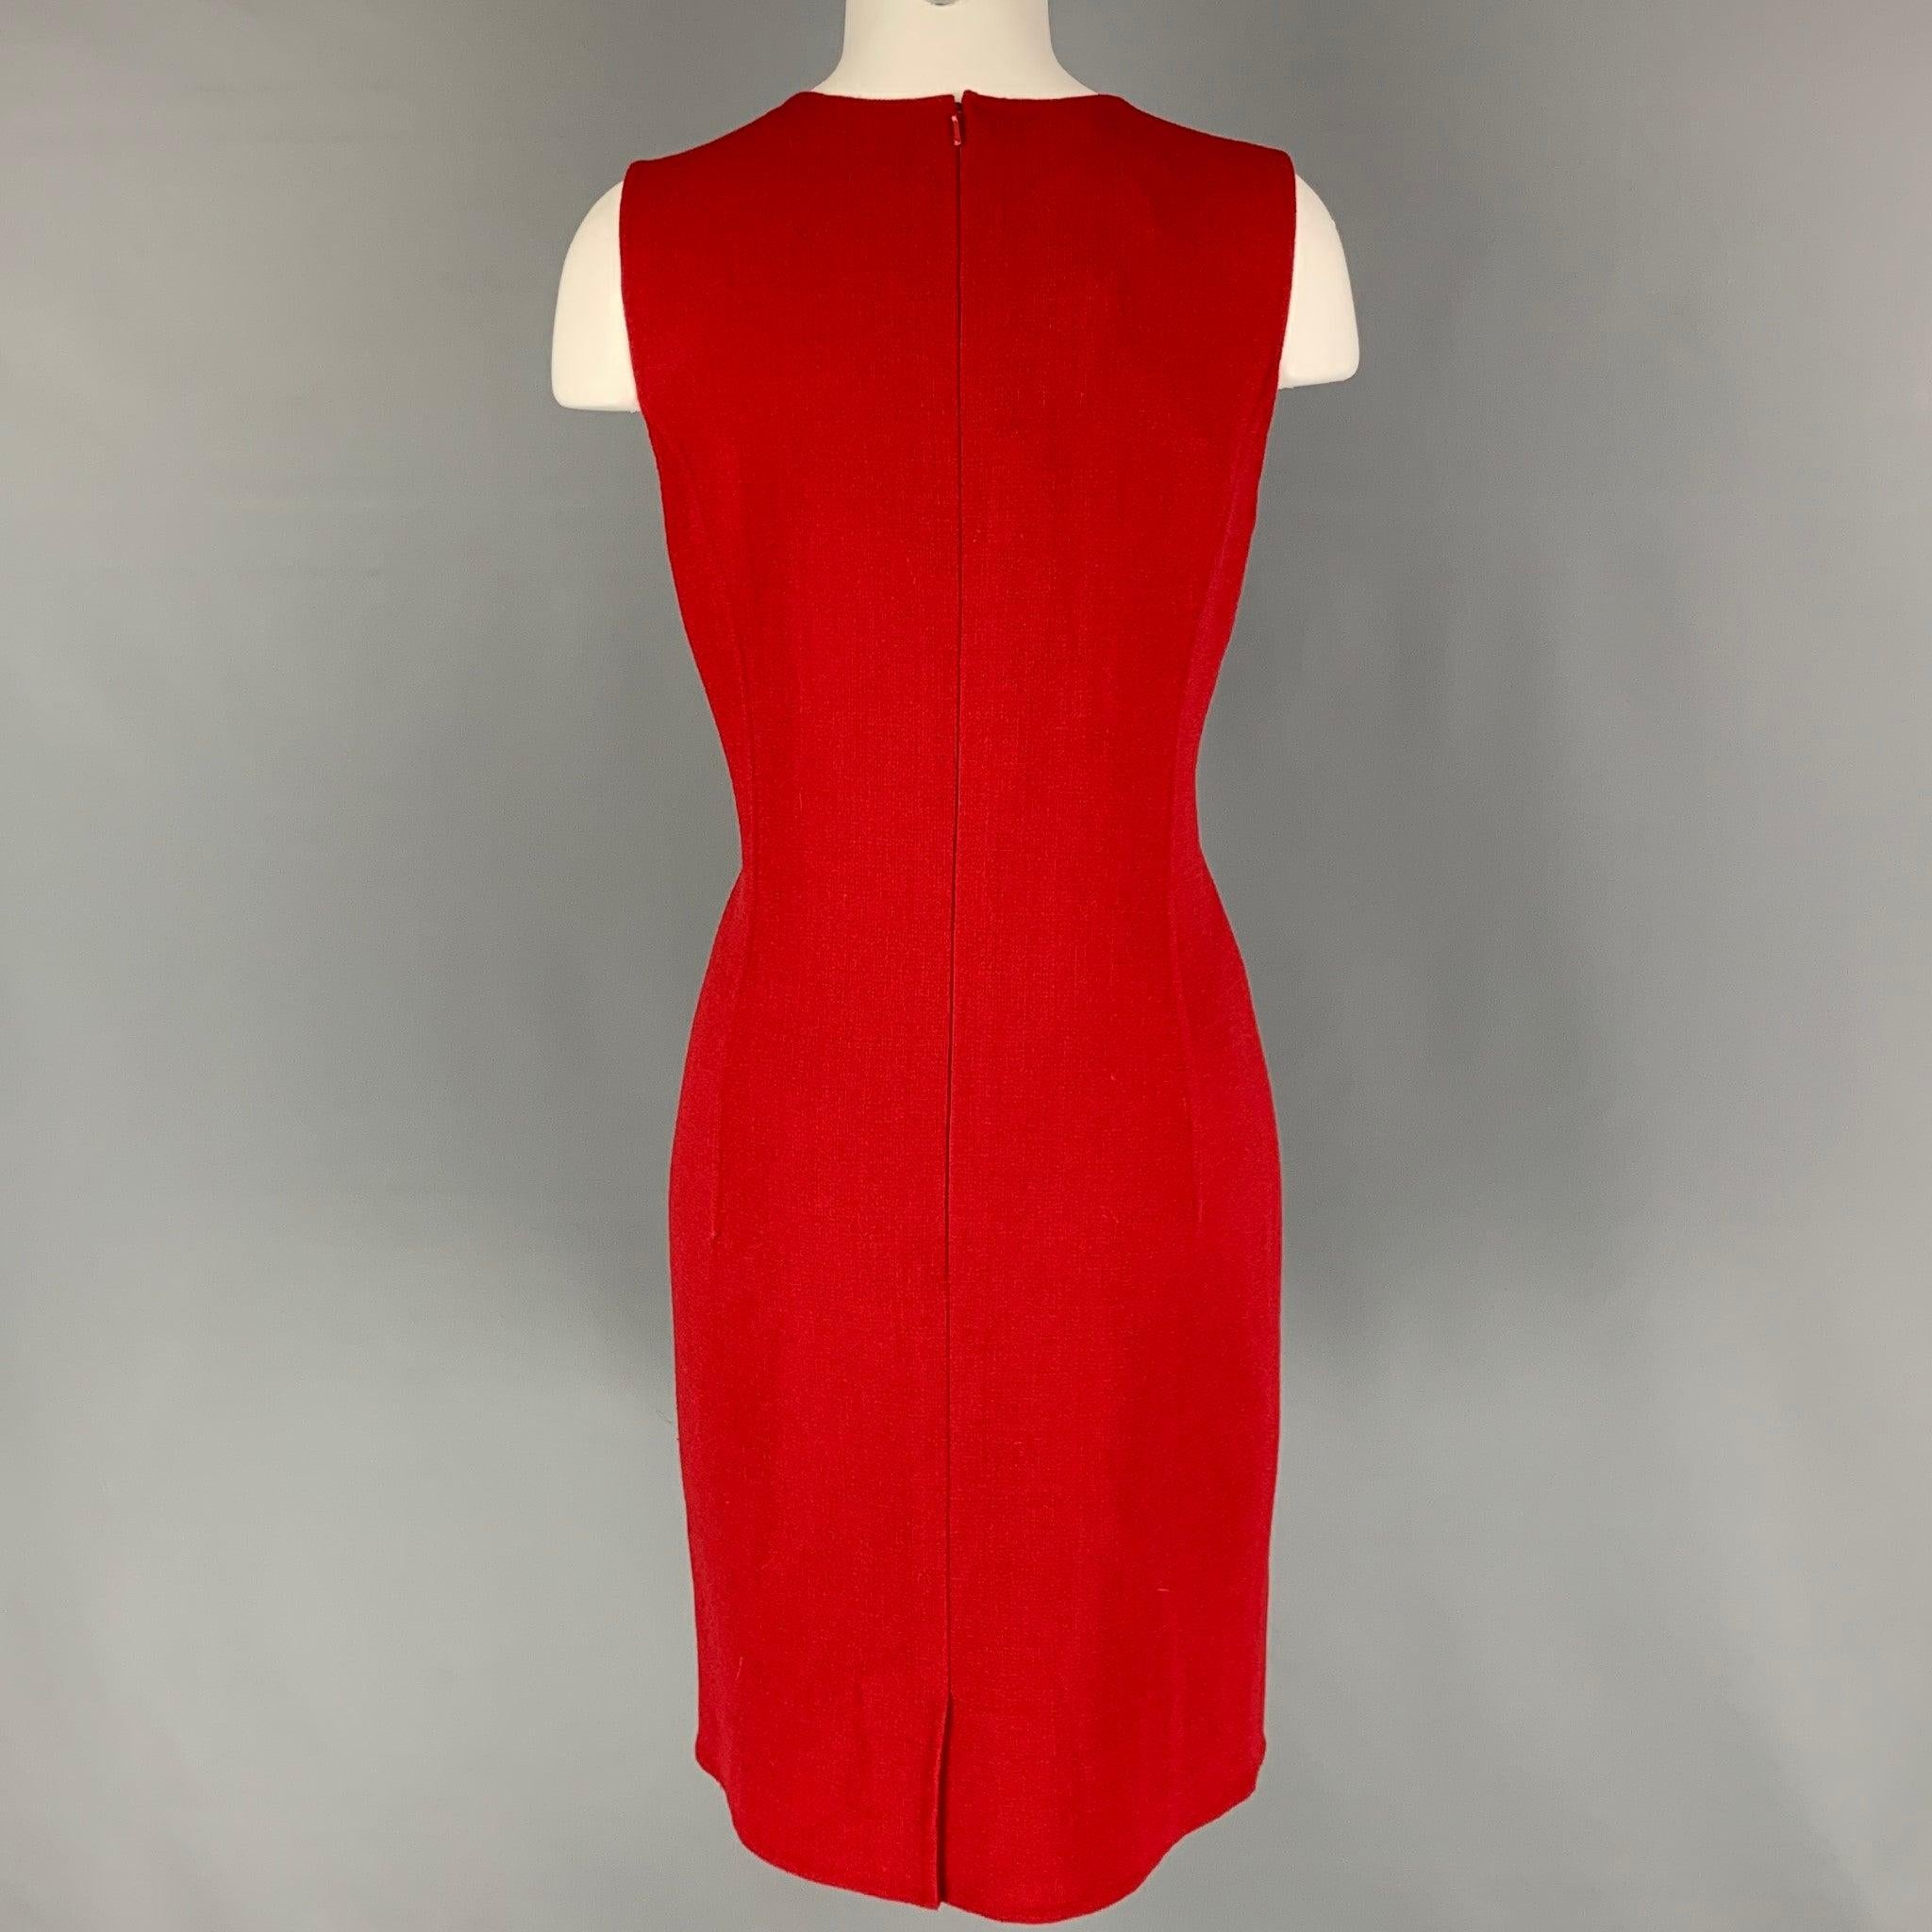 OSCAR DE LA RENTA Kleid aus roter Schurwollmischung, im Shift-Stil, ärmellos und mit Reißverschluss am Rücken. Die passende Jacke ist separat erhältlich. Hergestellt in Italien.
Neu mit Tags. 

Markiert:   6 

Abmessungen: 
 
Schultern: 13,5 Zoll 